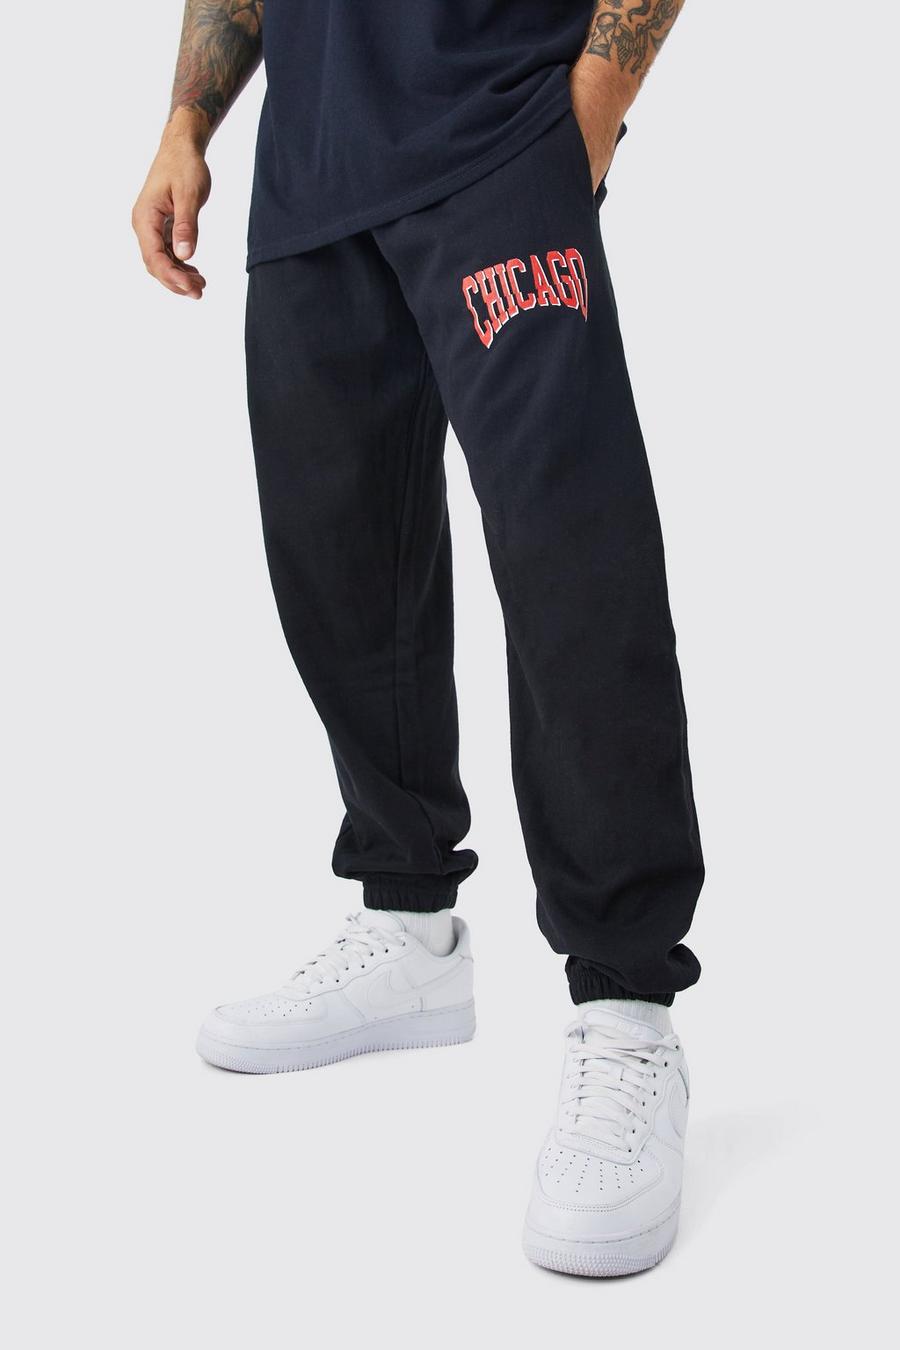 Pantalón deportivo oversize con estampado universitario de Chicago, Black image number 1